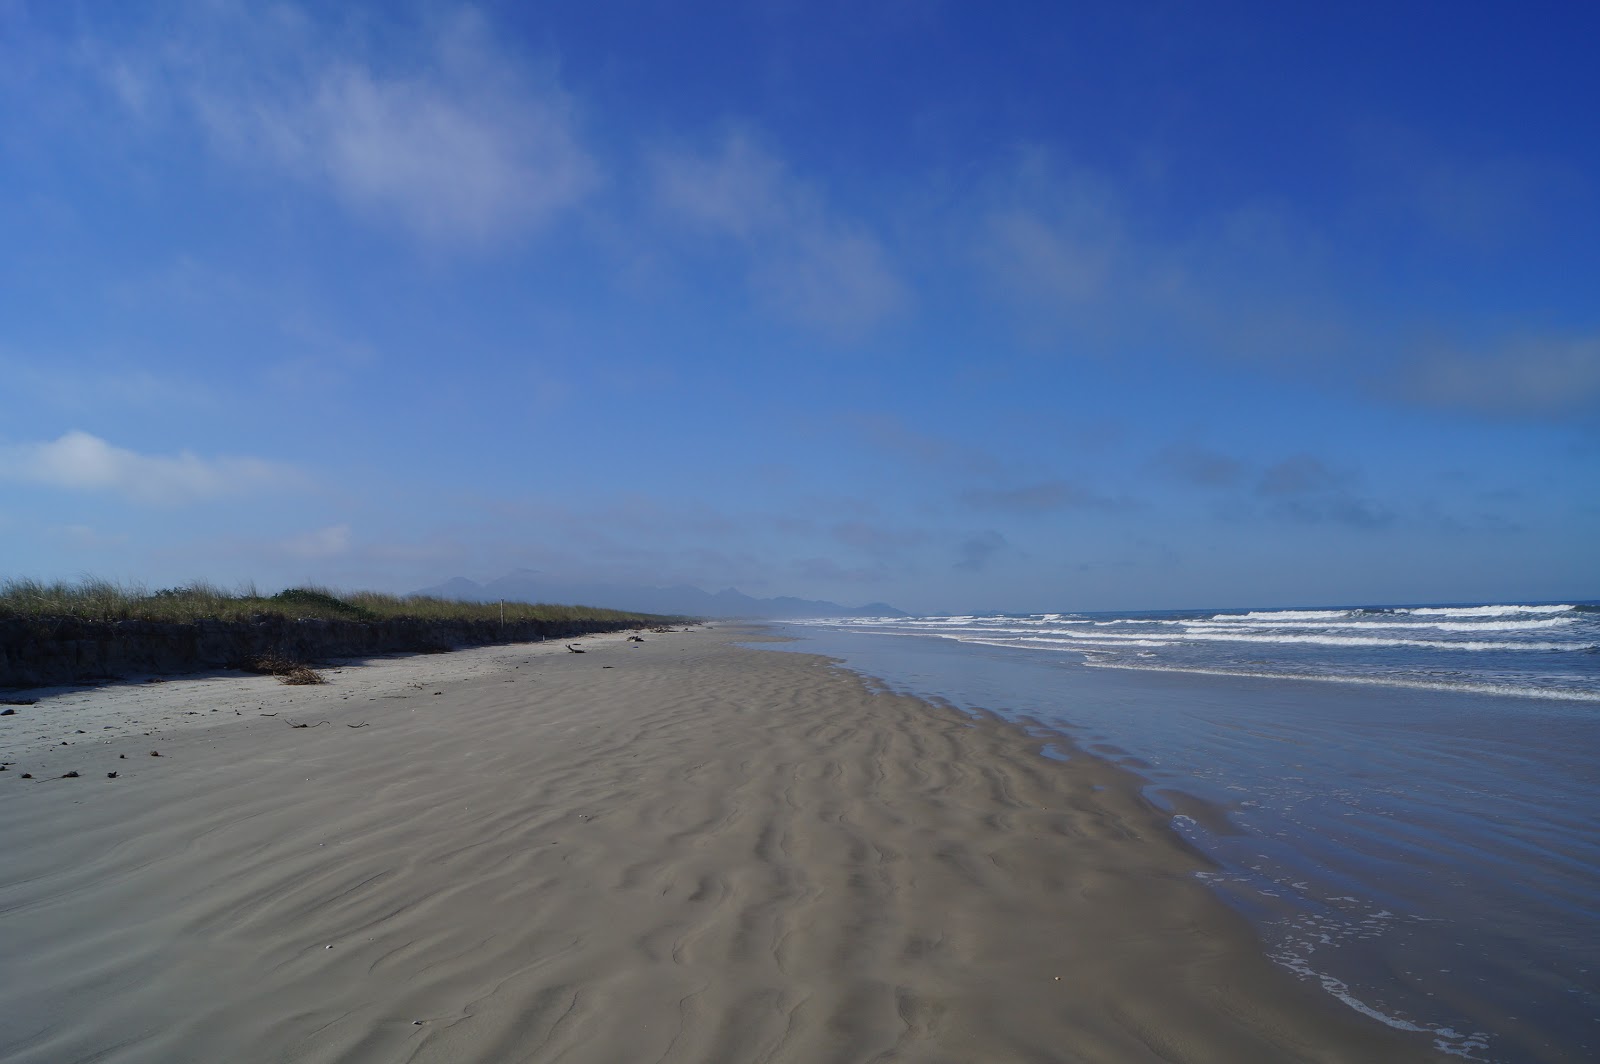 Foto av Stranden Pontal da Ilha med ljus sand yta